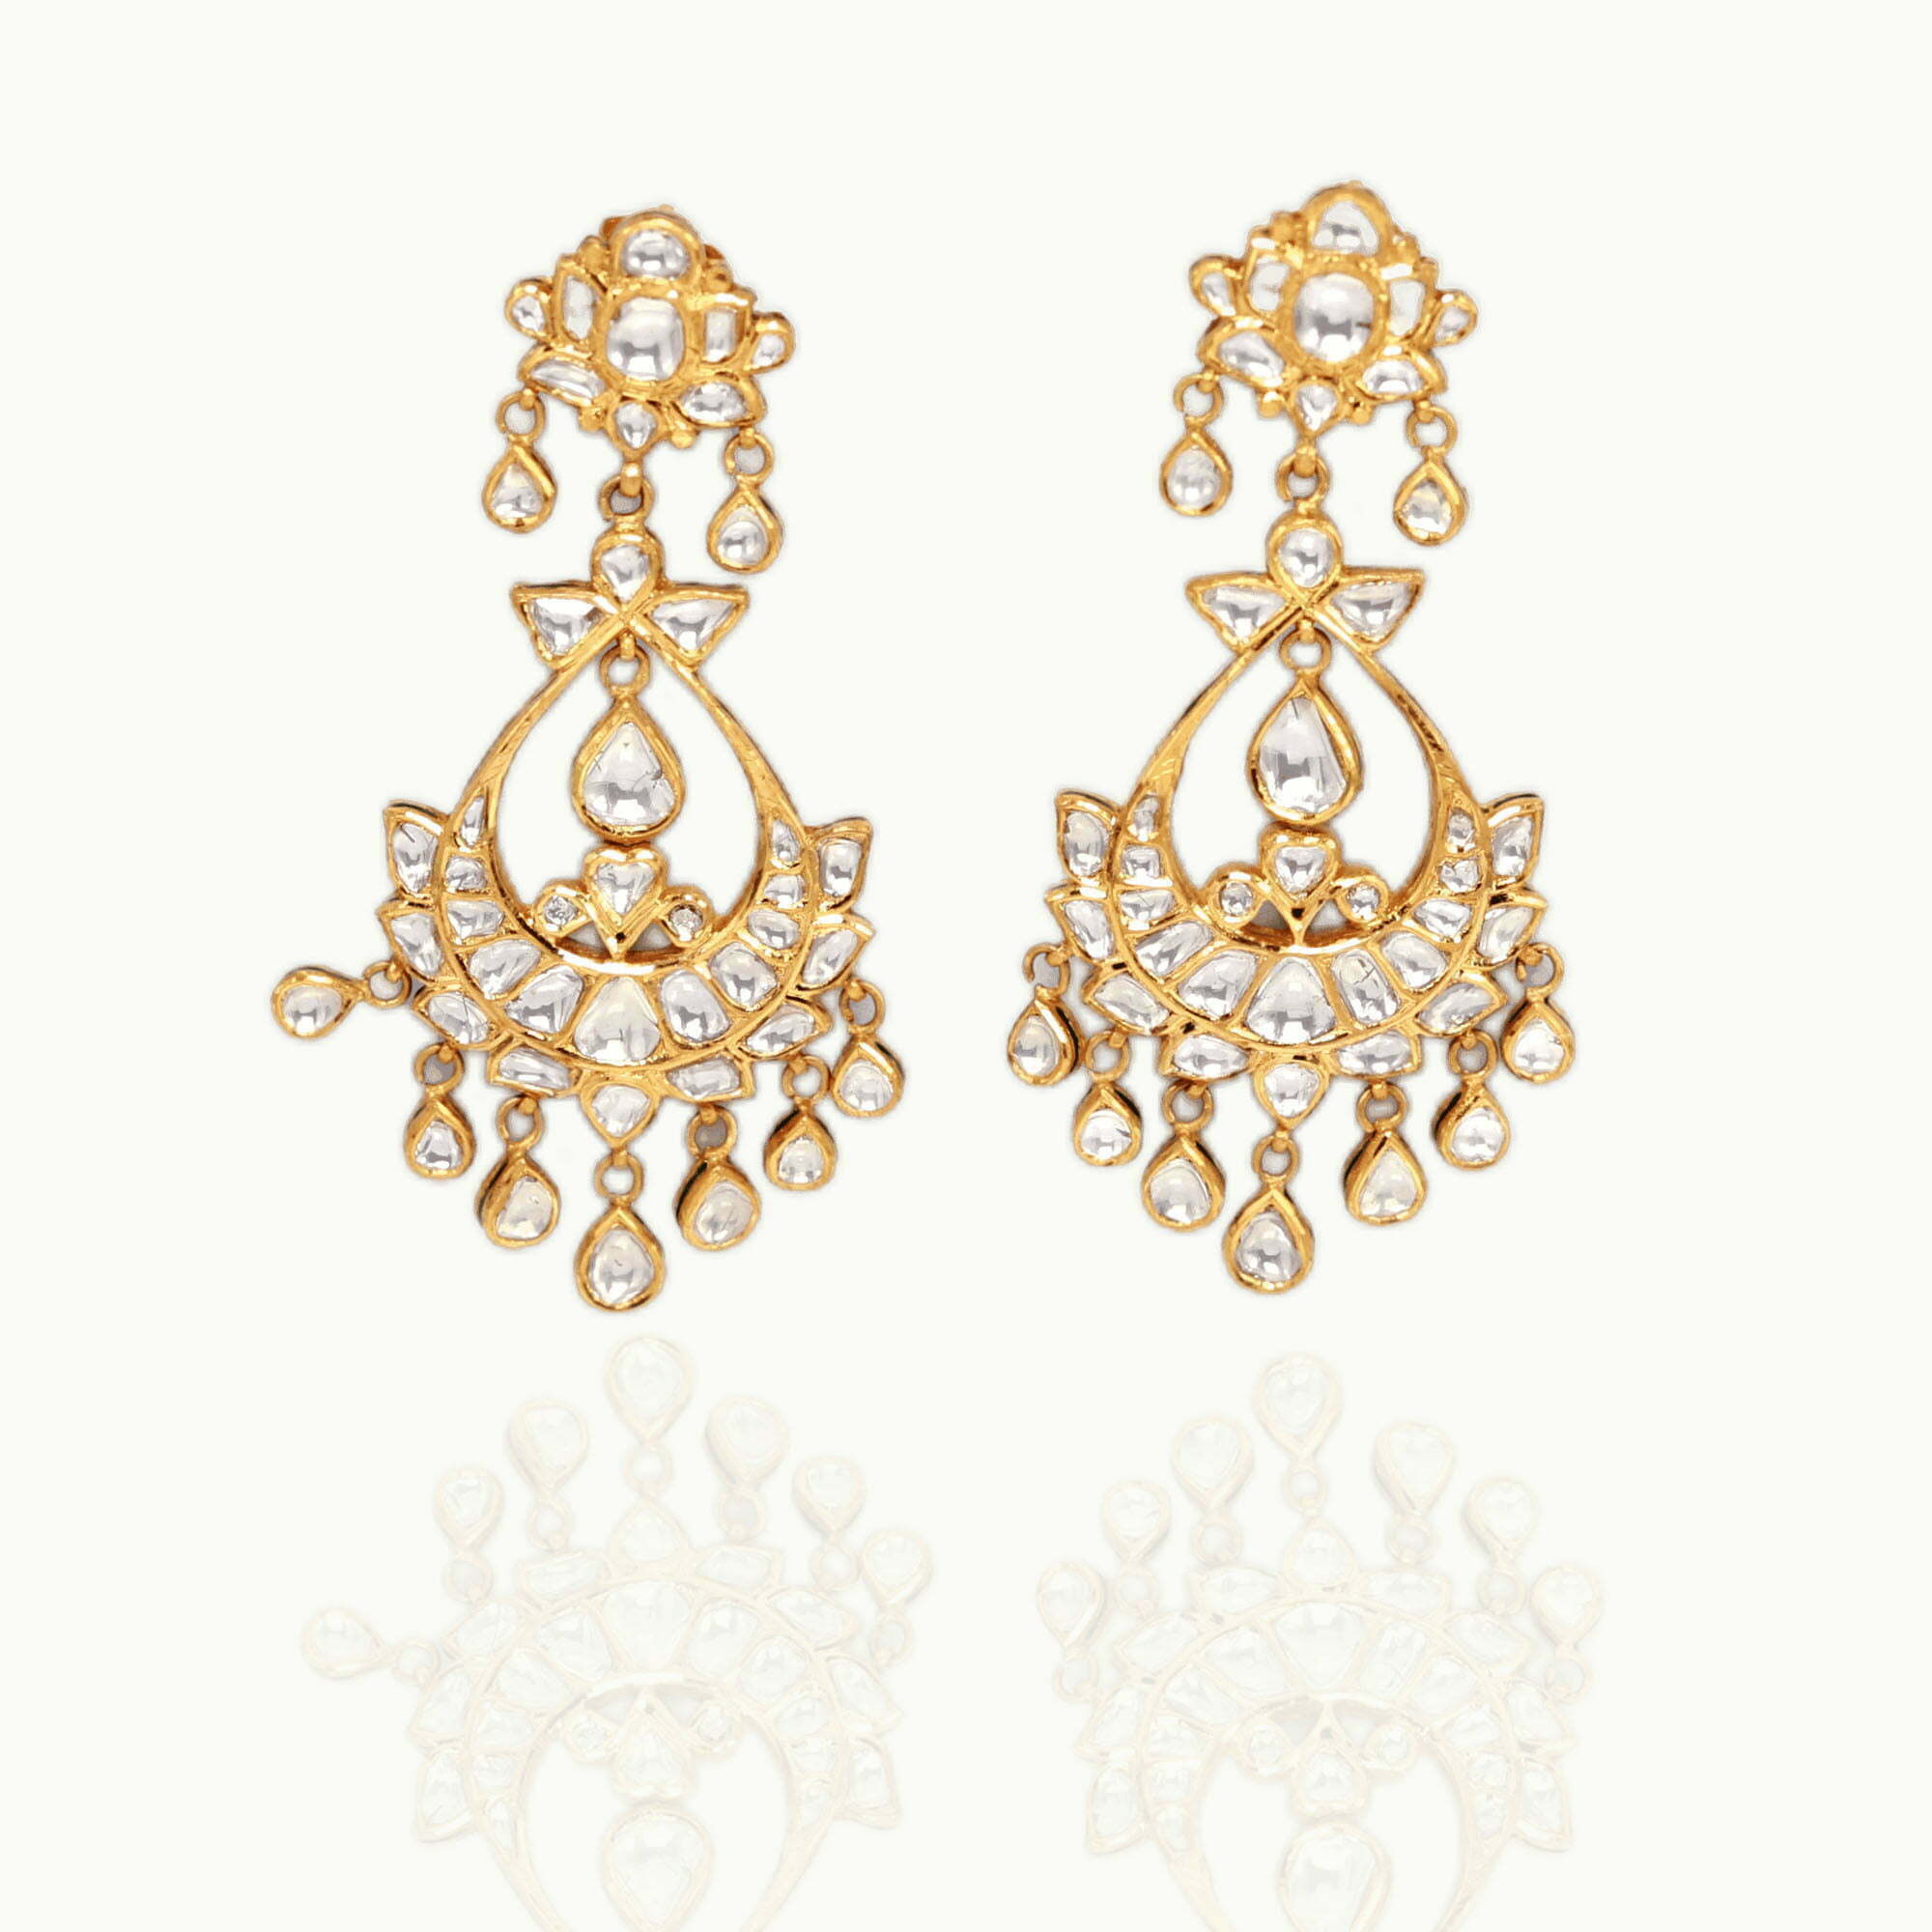 Latest Beautiful Long Earrings Designs - Fancy Earrings Collection |  Designer earrings, Earrings collection, Long earrings